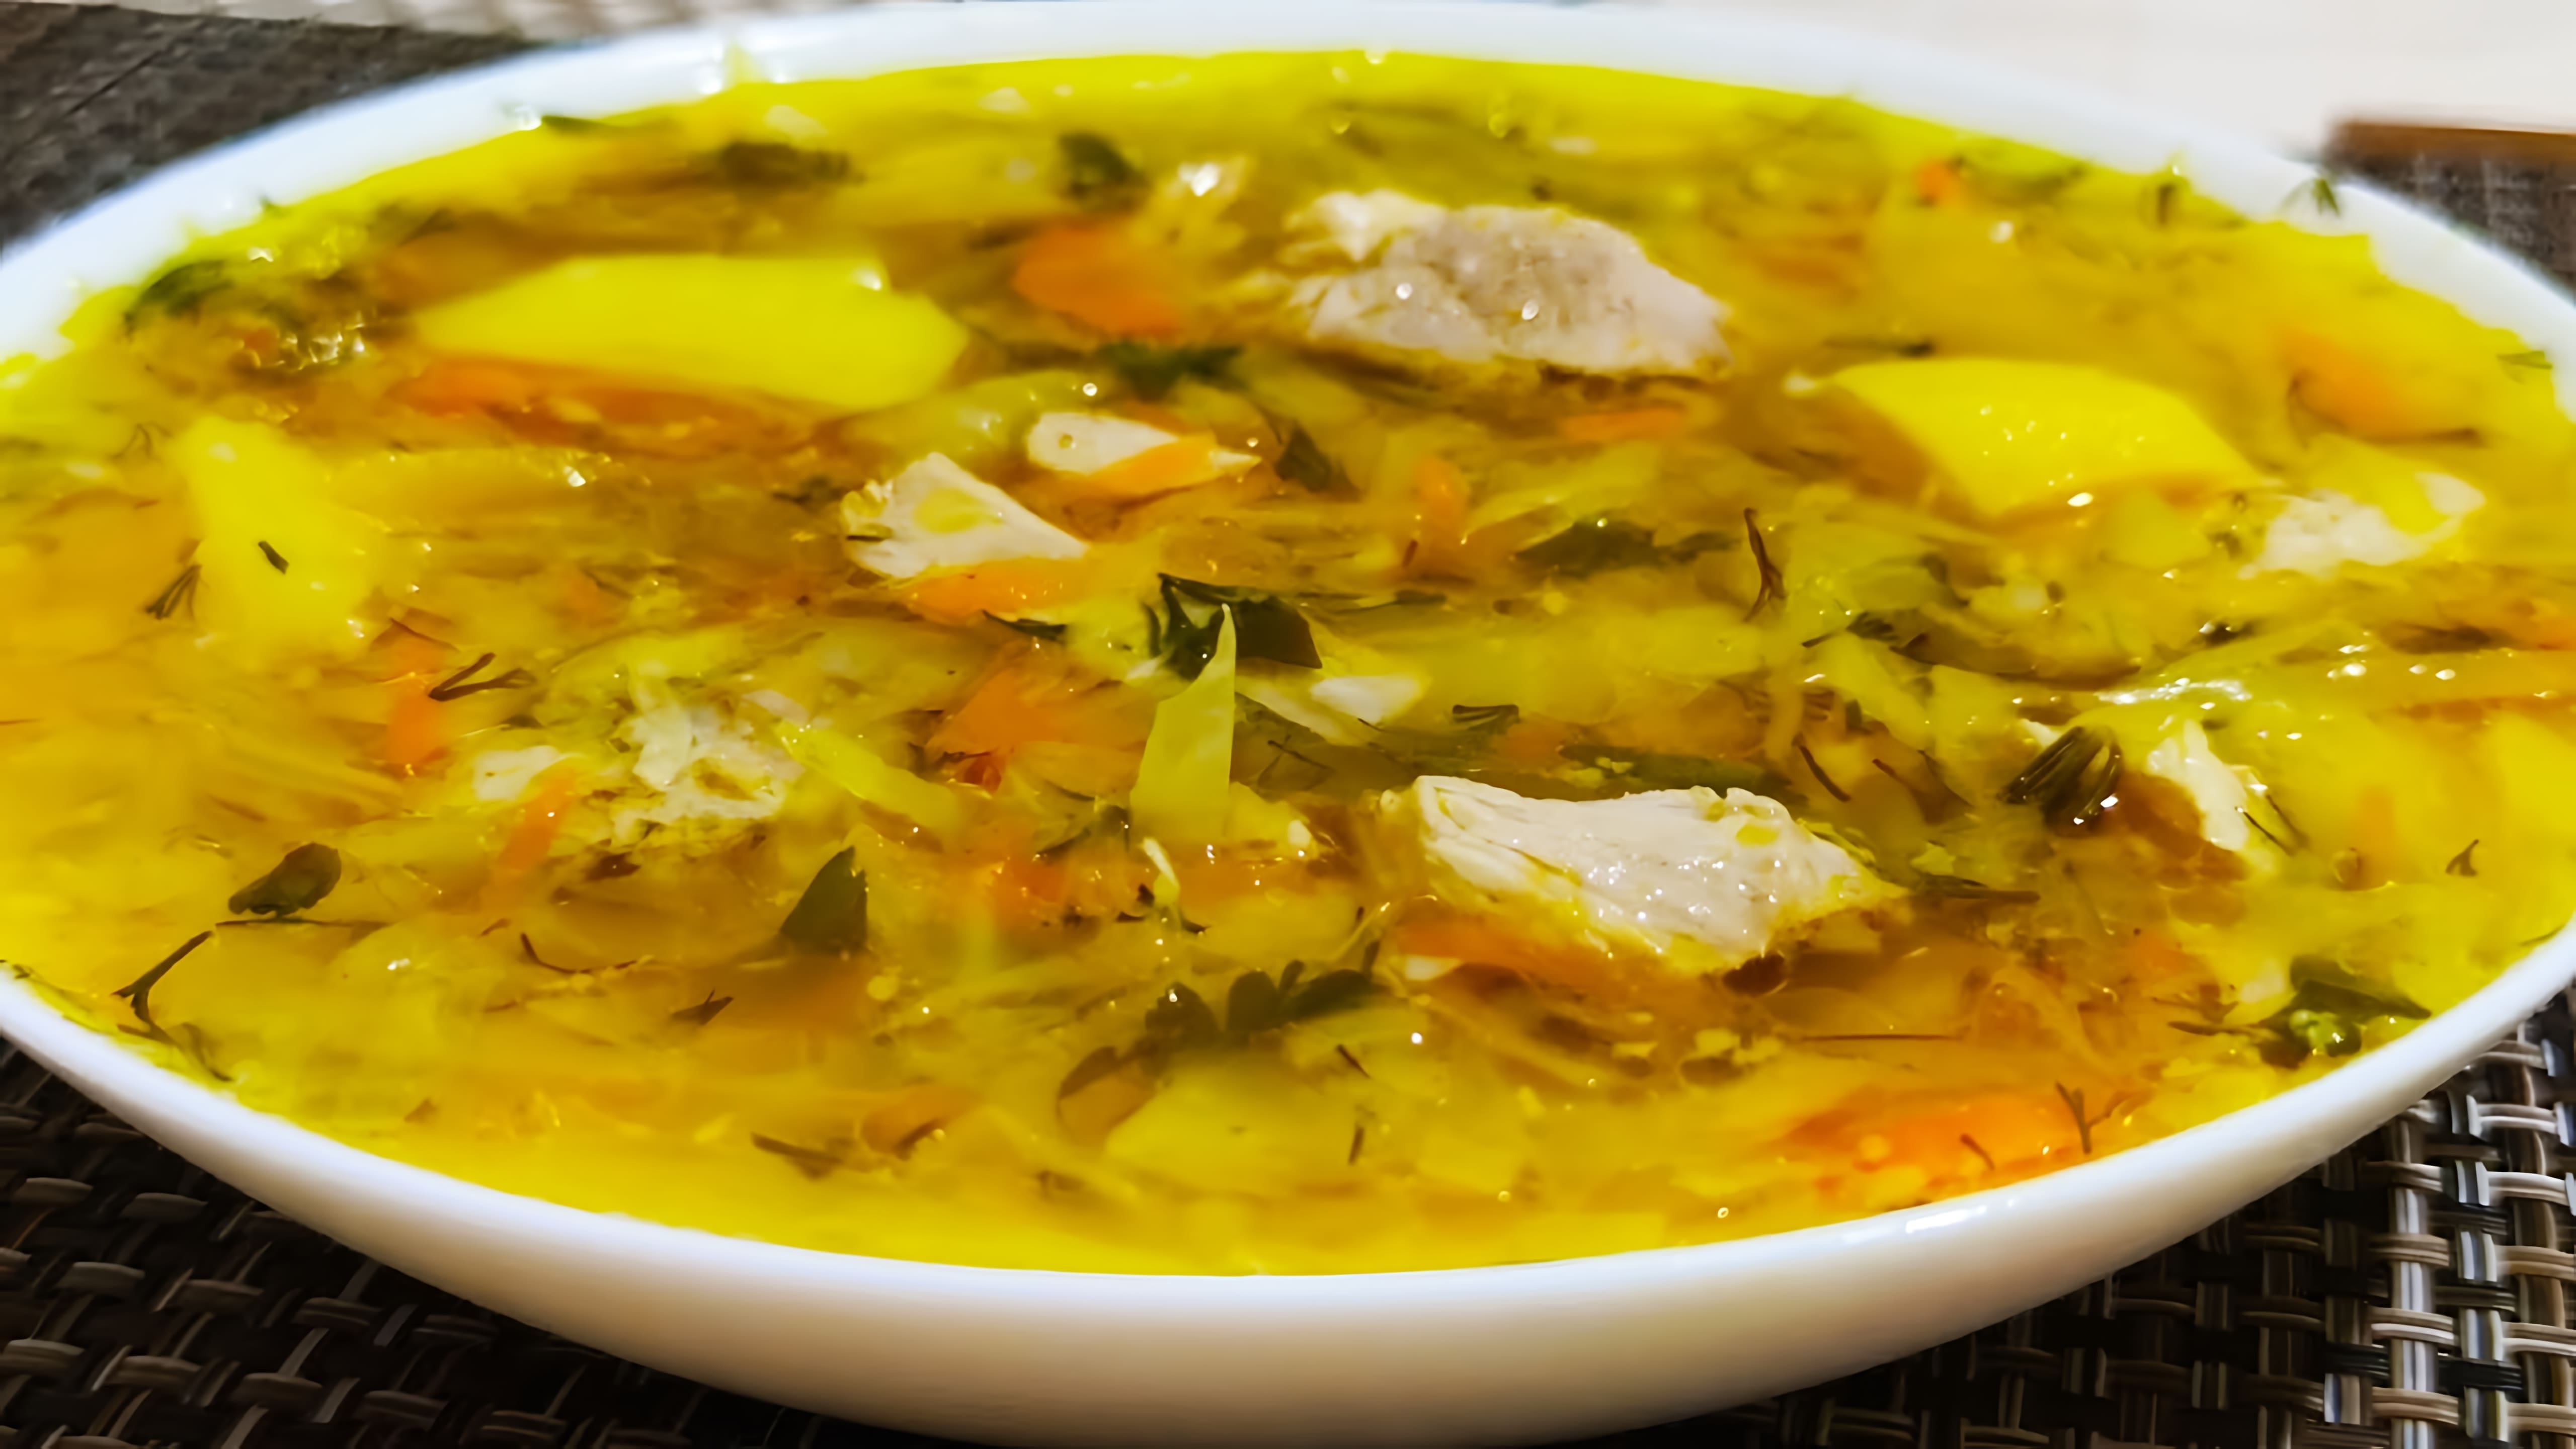 Видео пошаговый рецепт приготовления щи - русского капустного супа с свининой